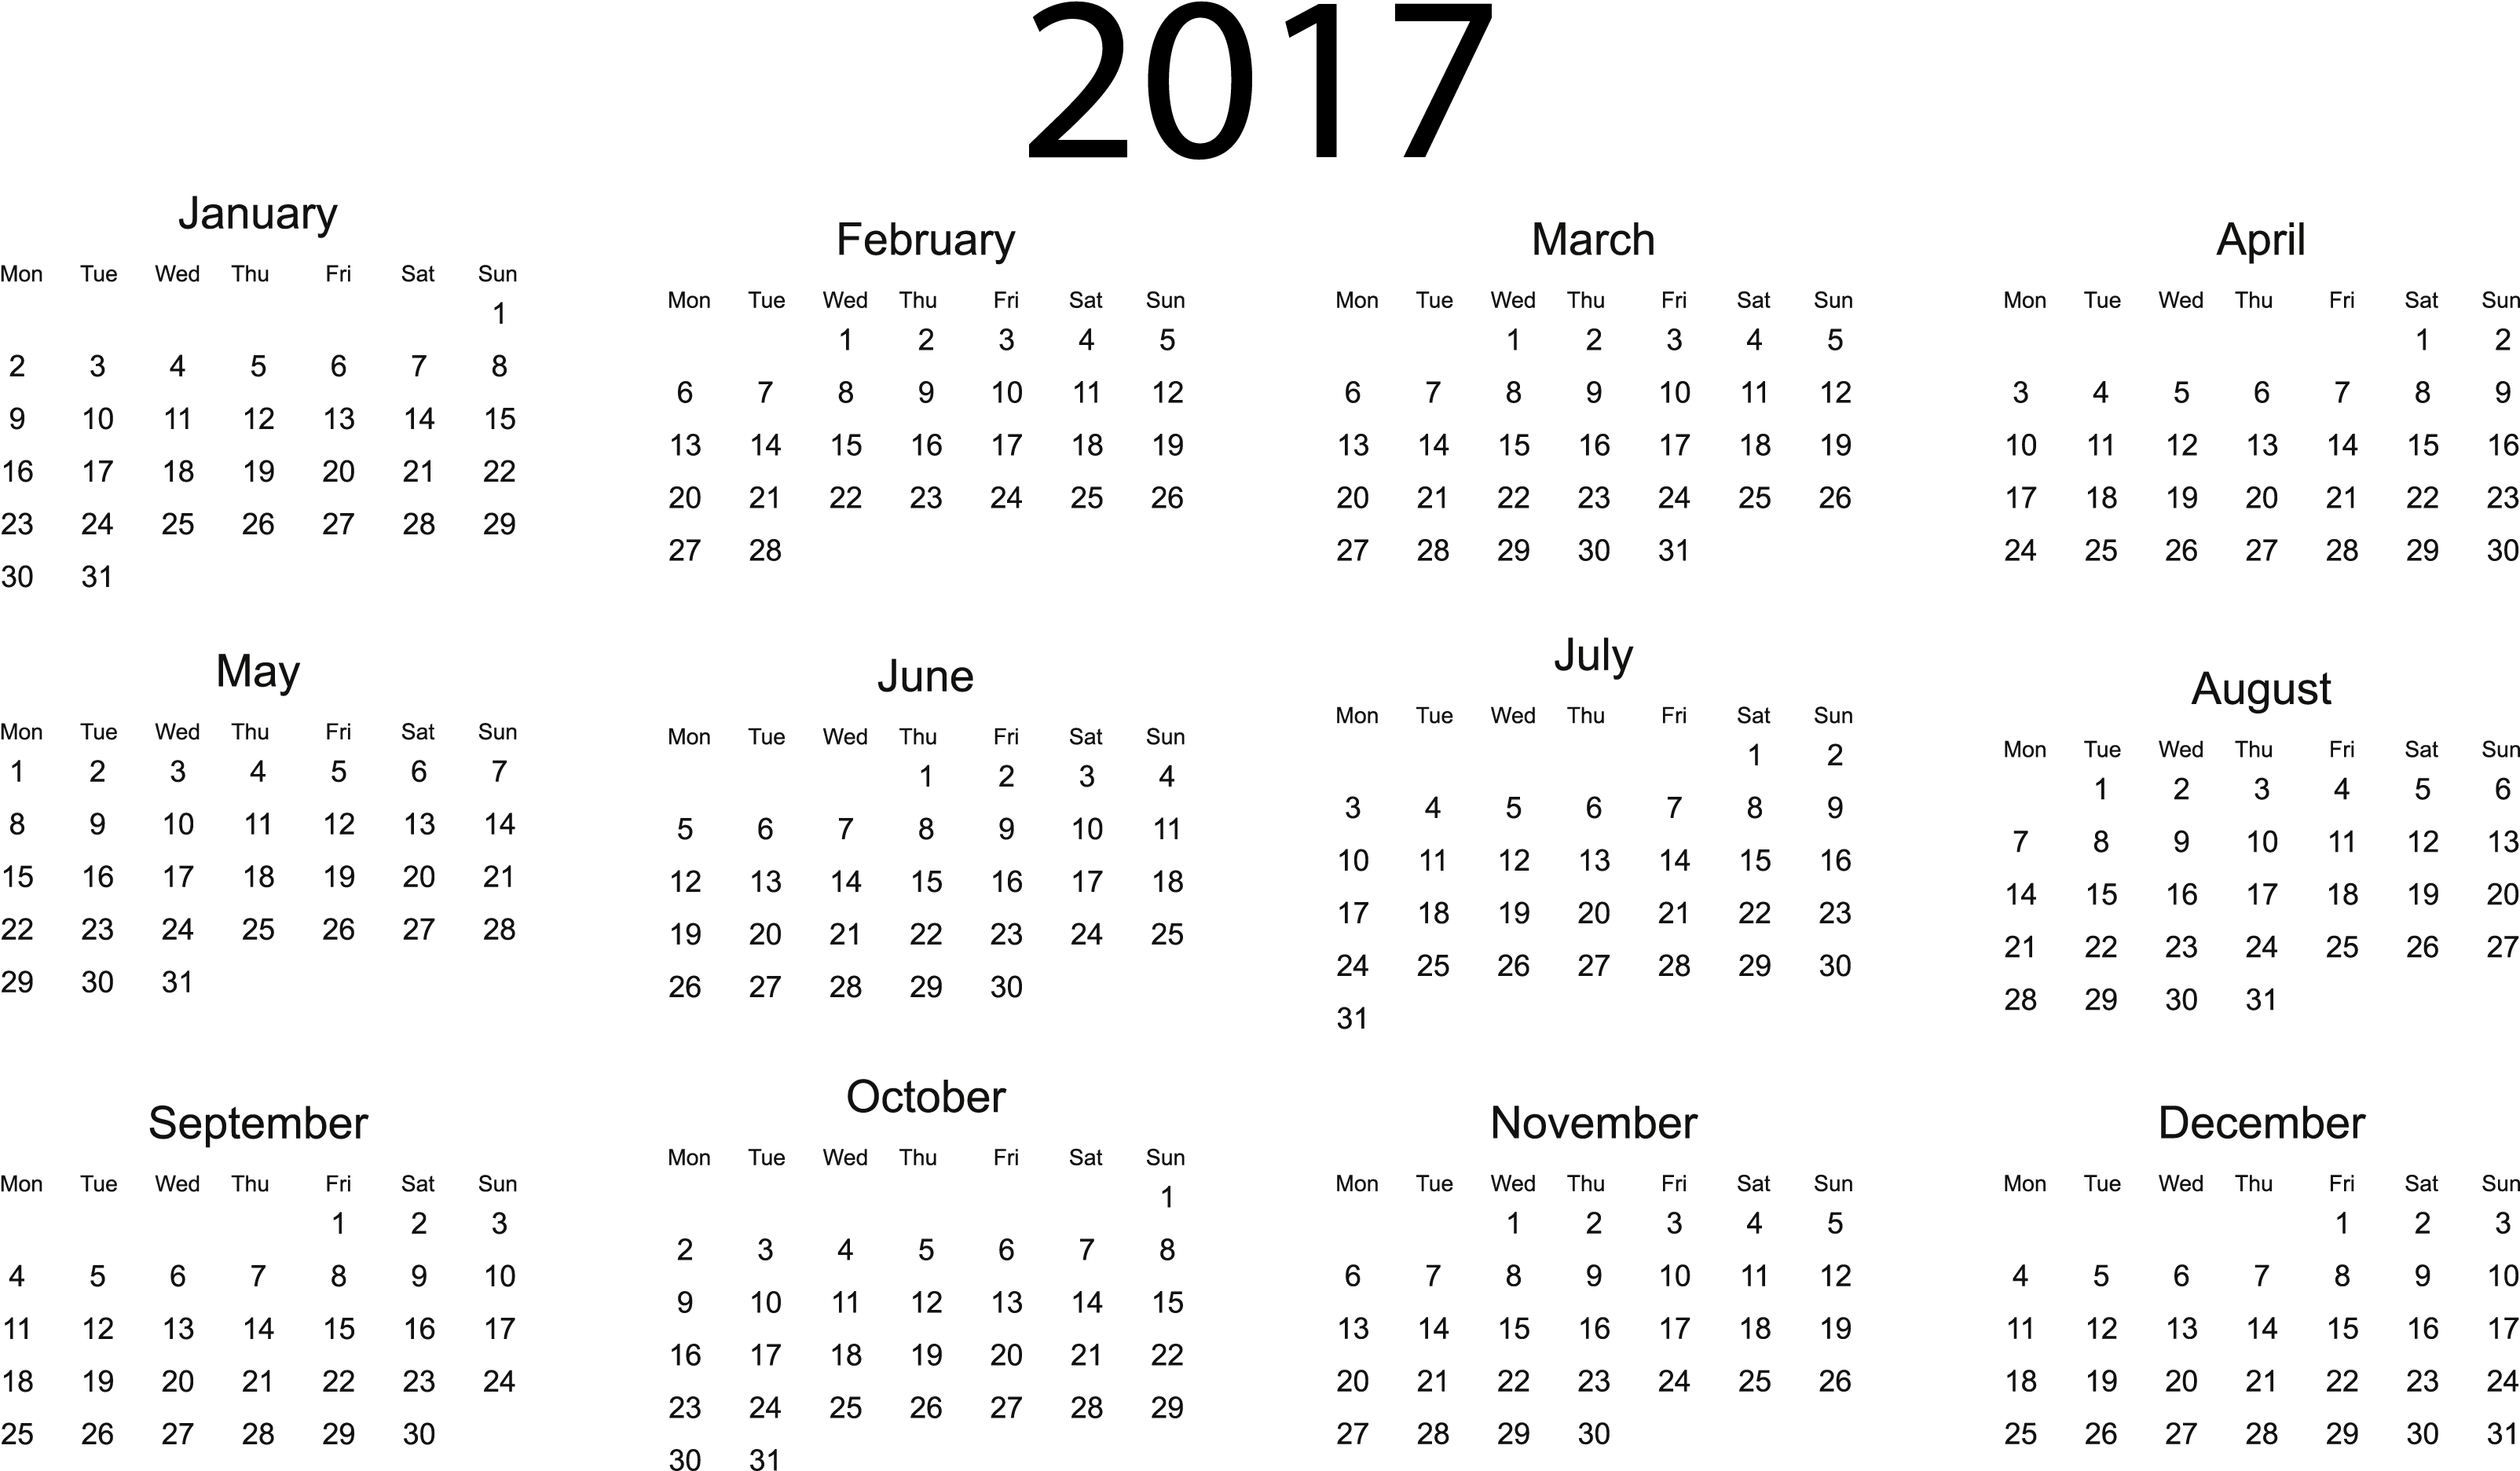 2017 Calendar - Full Year 2019 Calendar Clipart (3372x2089), Png Download